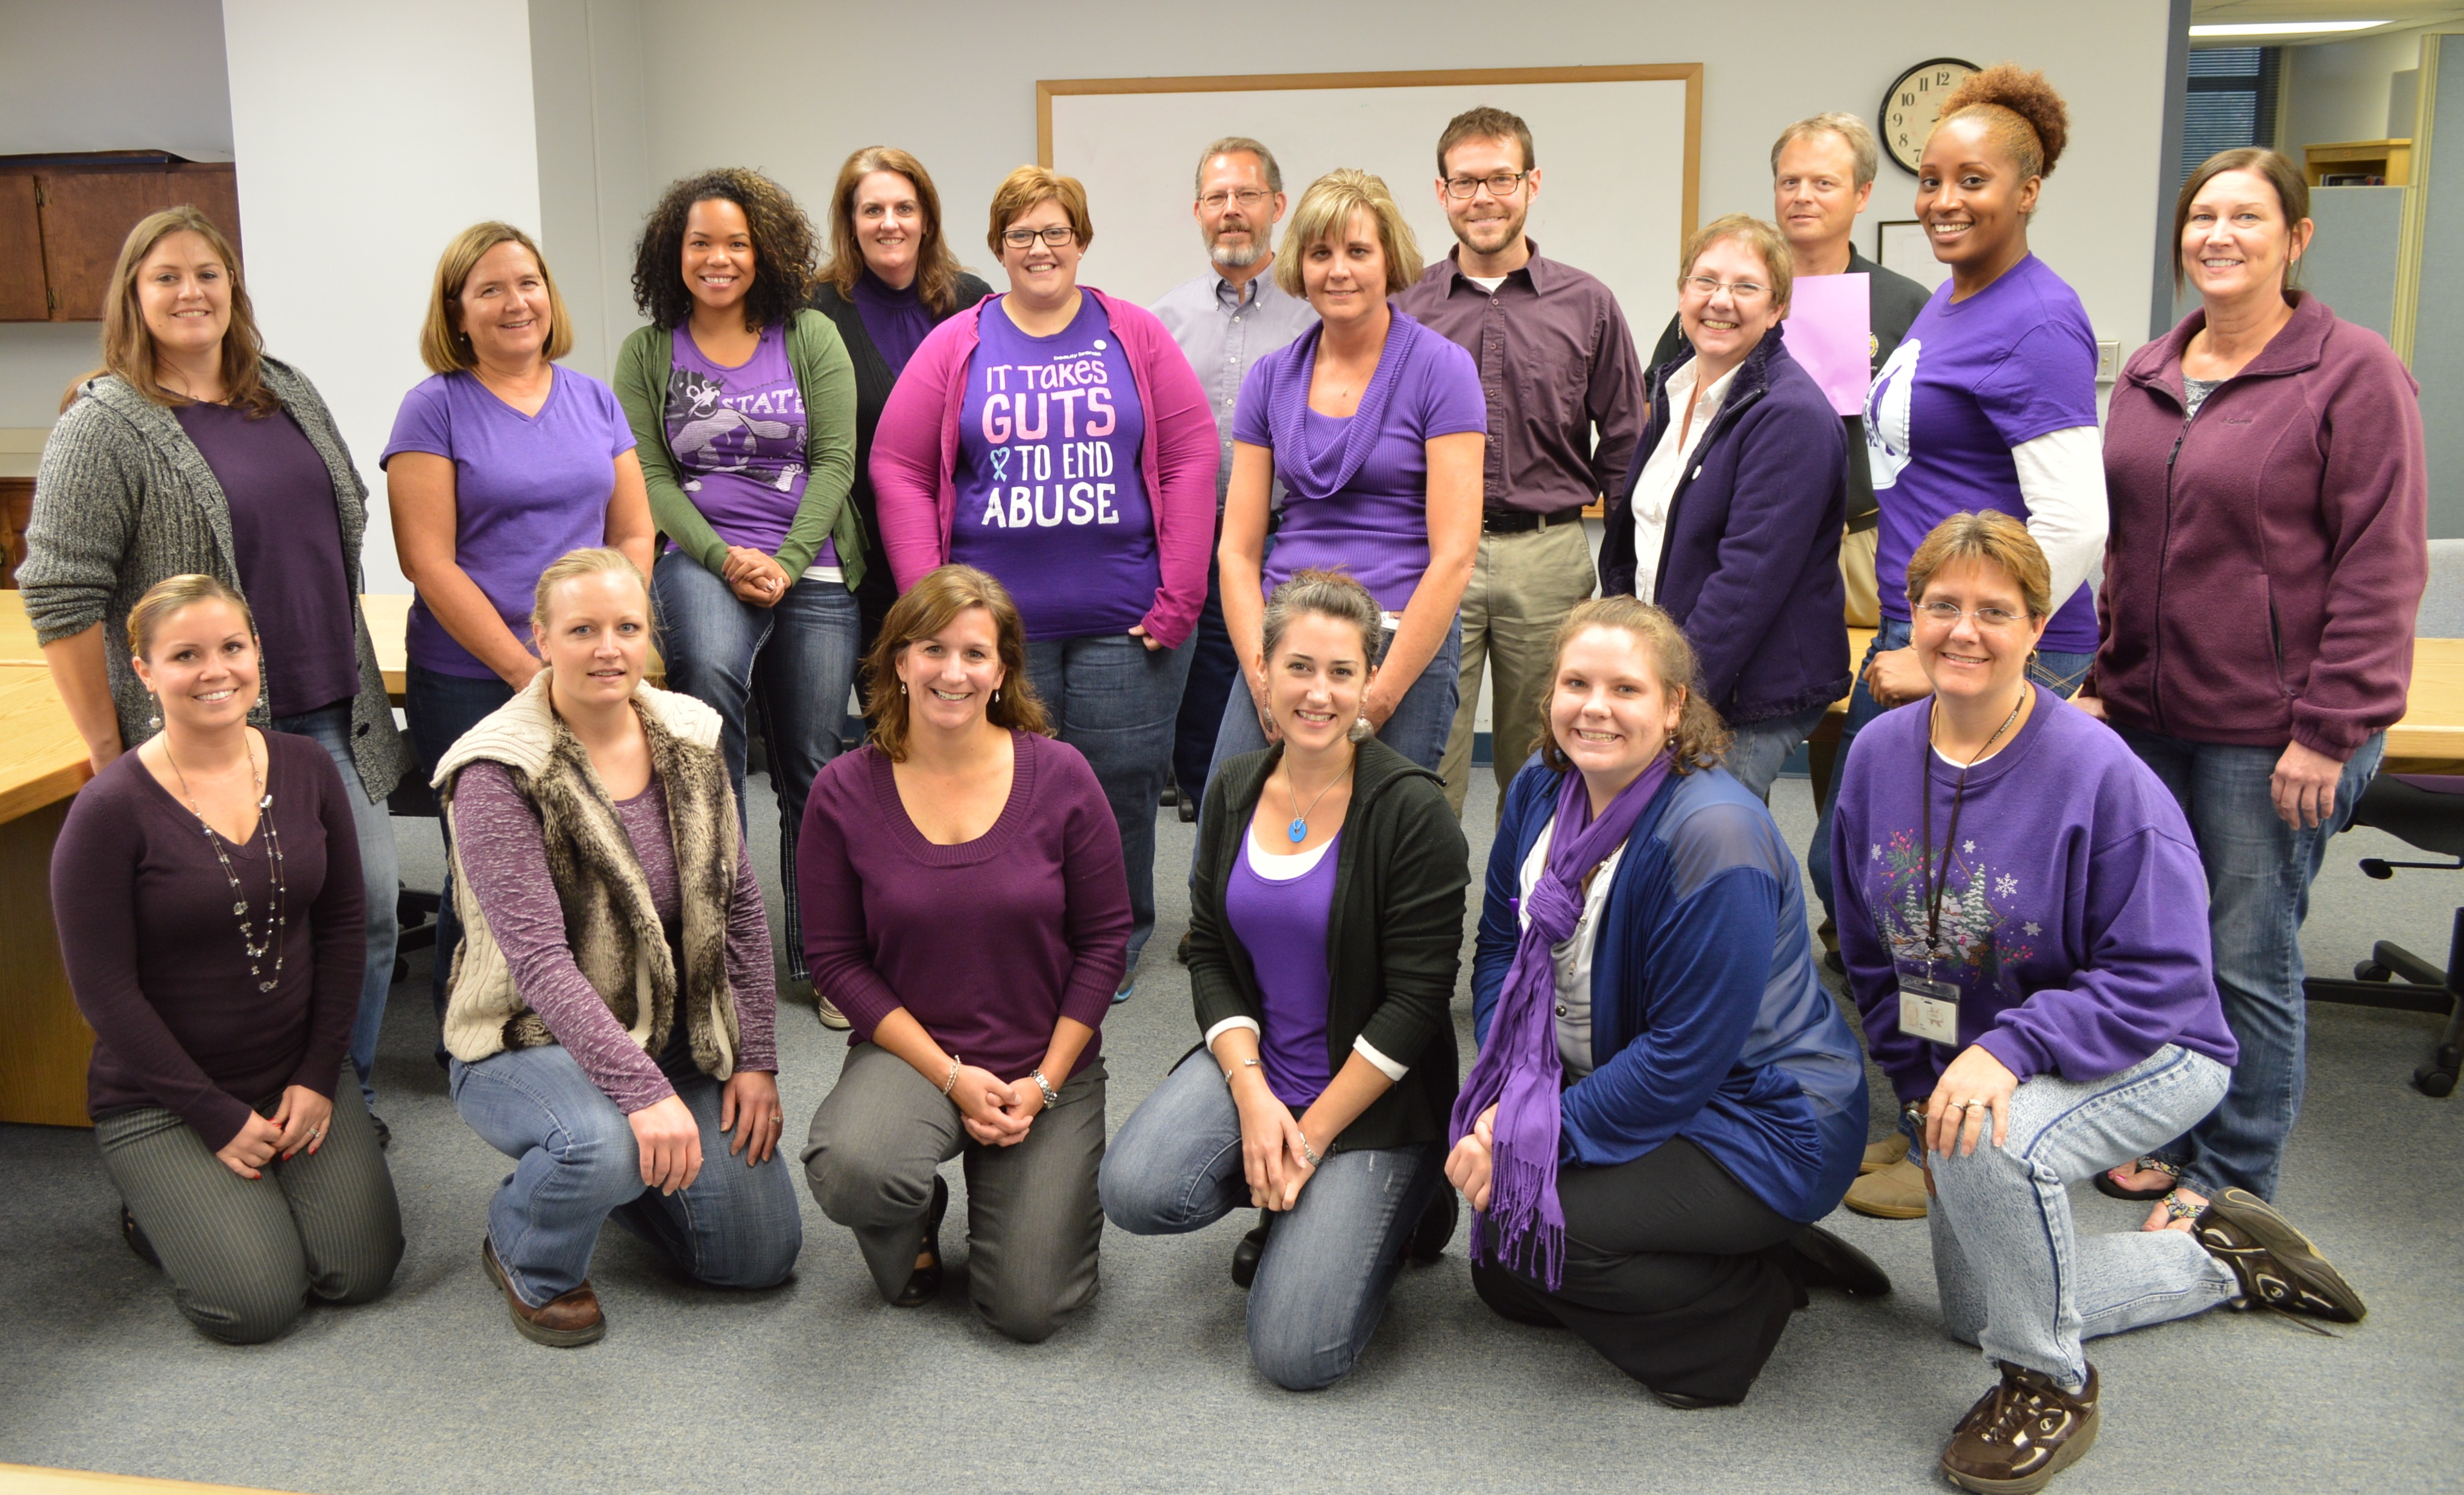 CO staff in purple